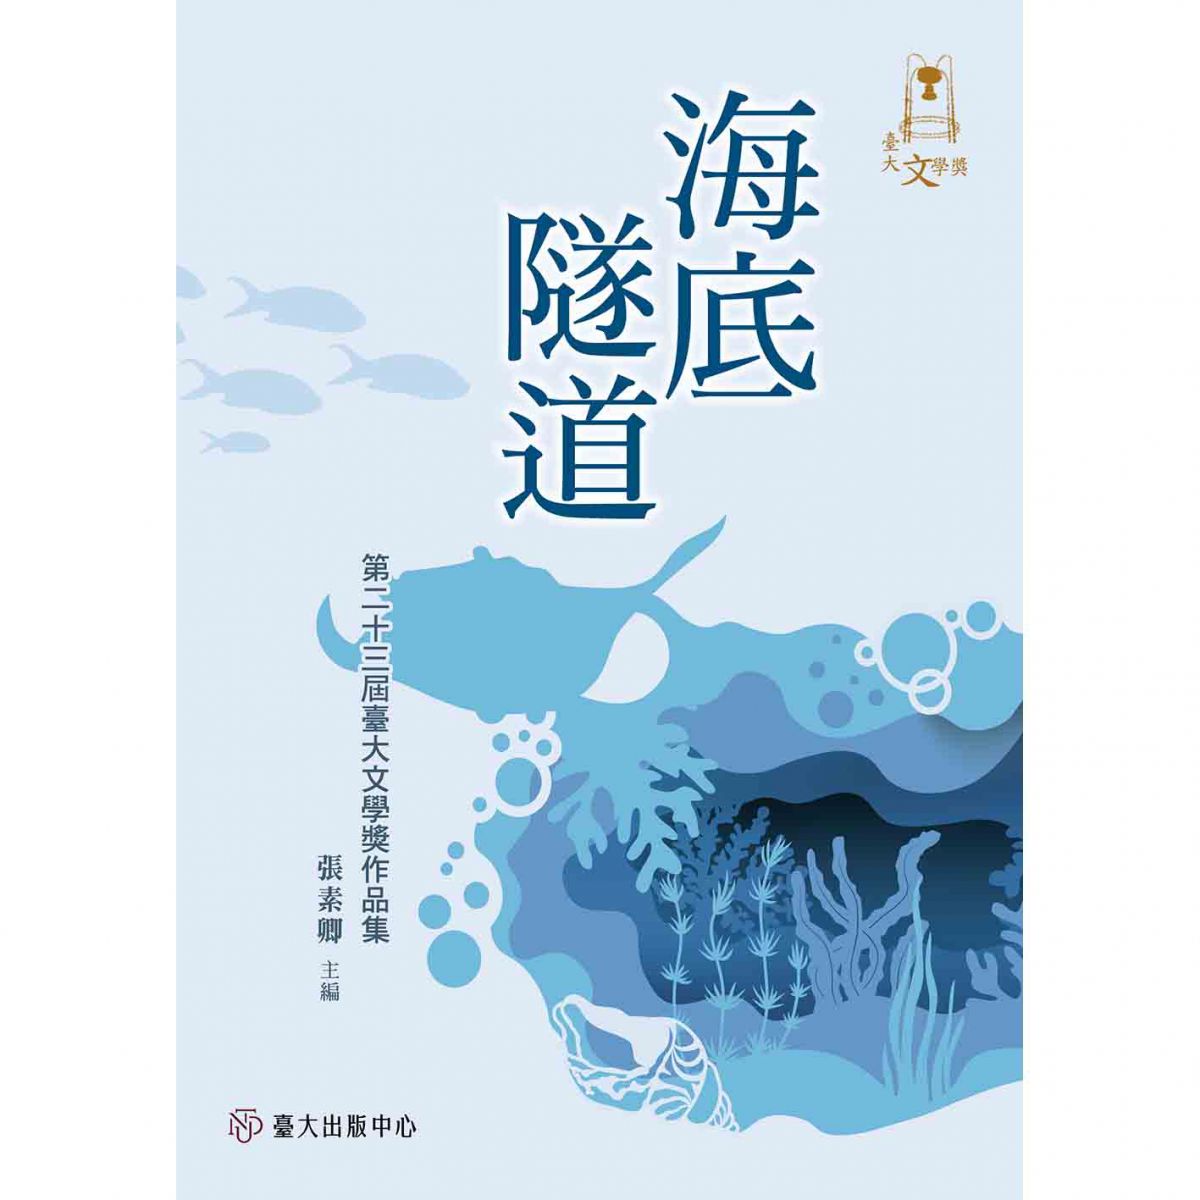 《海底隧道──第二十三屆臺大文學獎作品集》出版